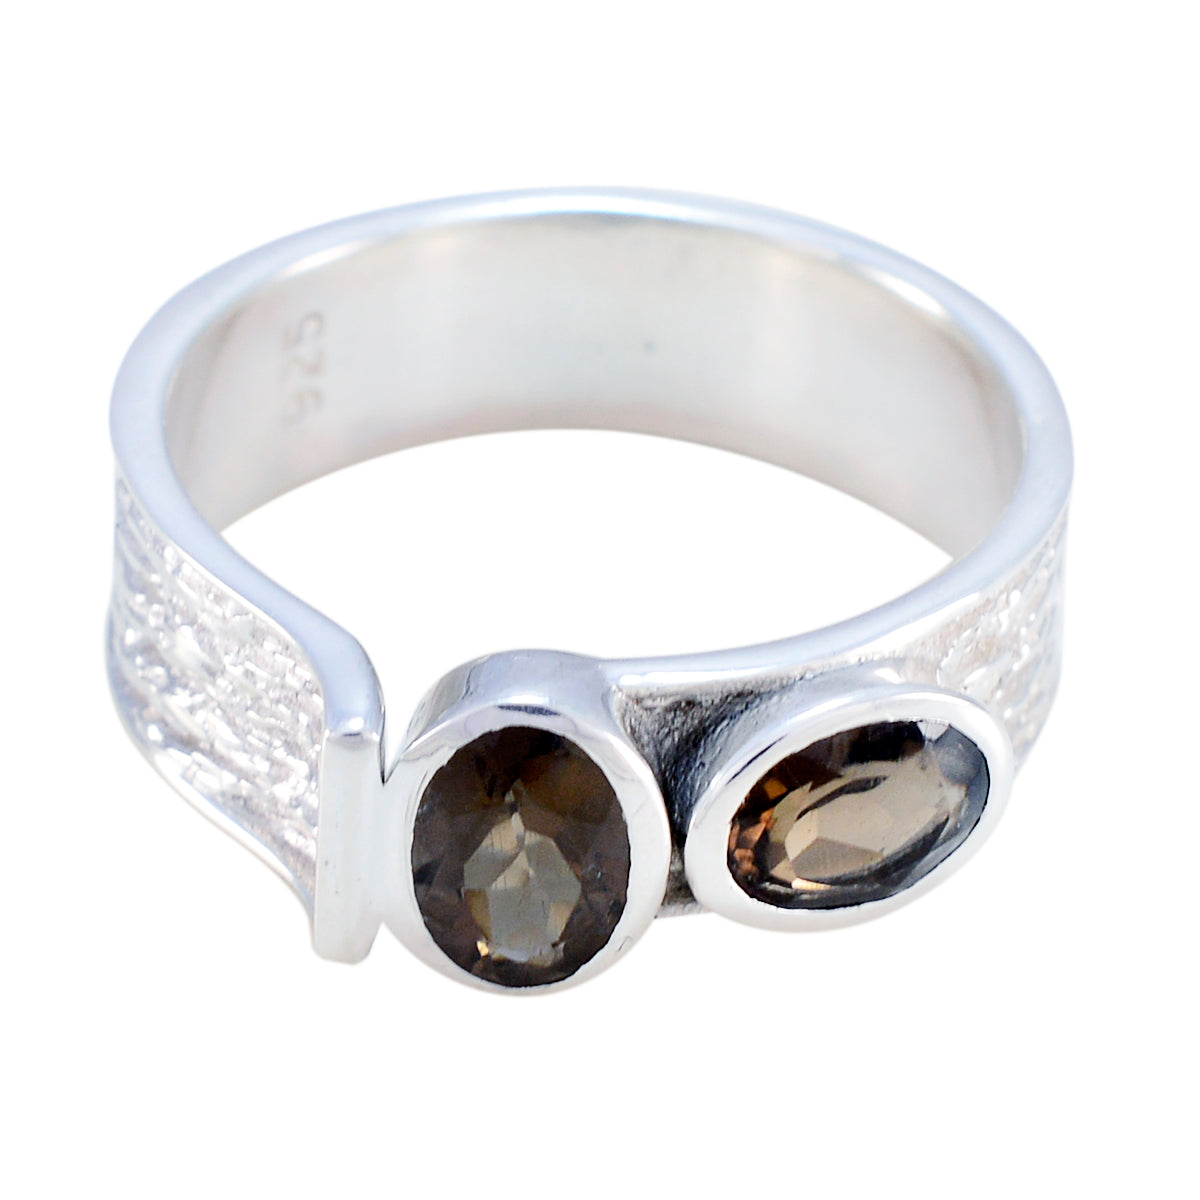 дразнящие драгоценные камни дымчатый кварц серебряные кольца королевские украшения для тела